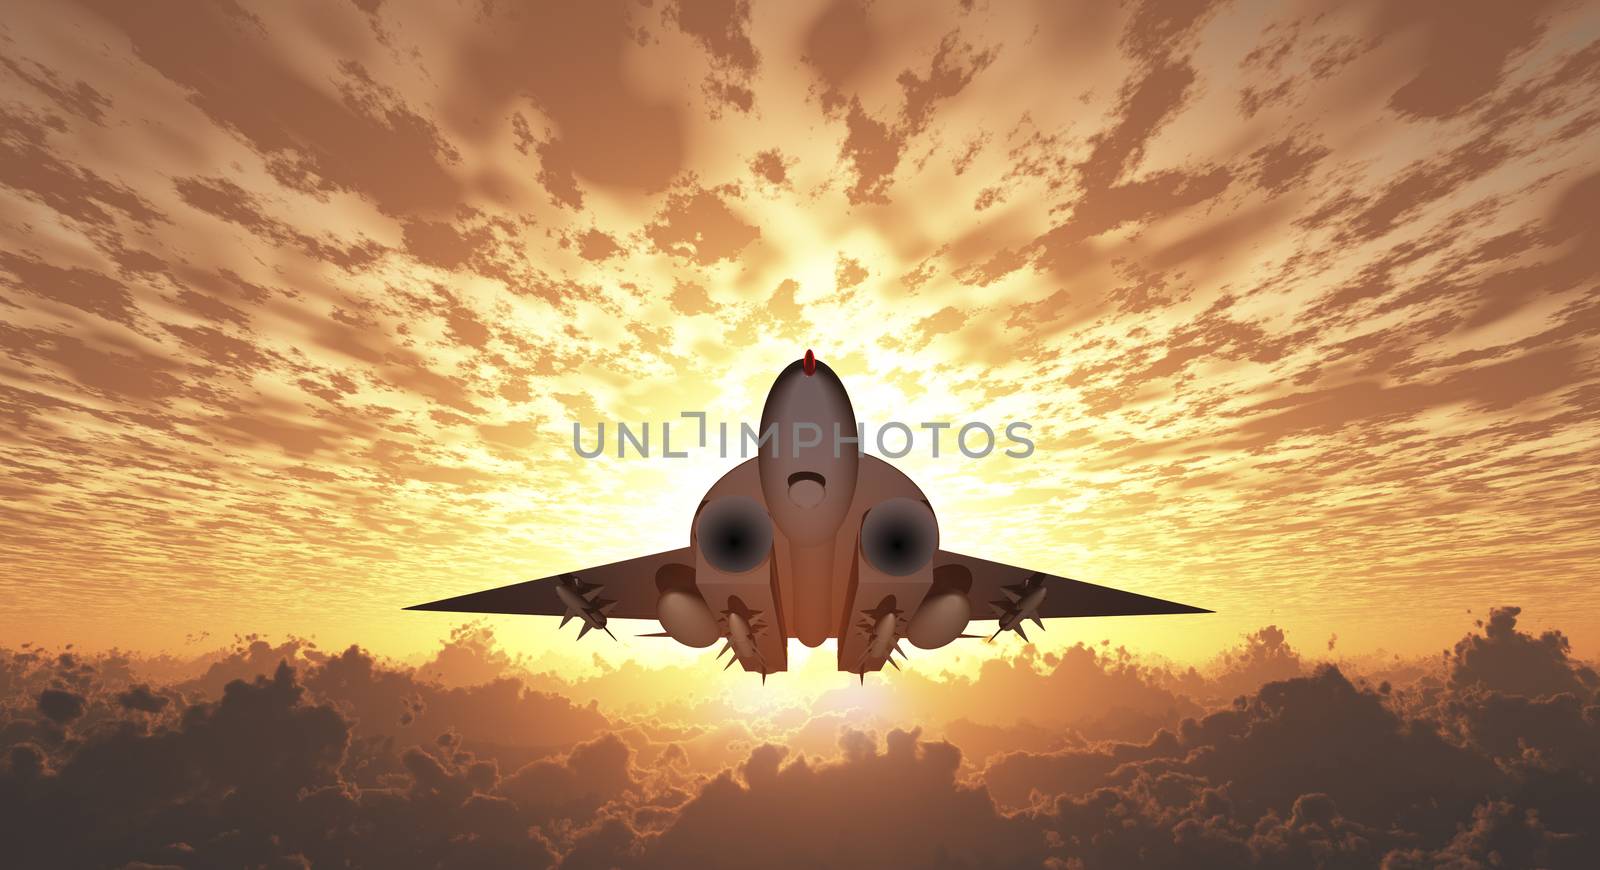 Military Jet  in Flight Sunrise or Sunset